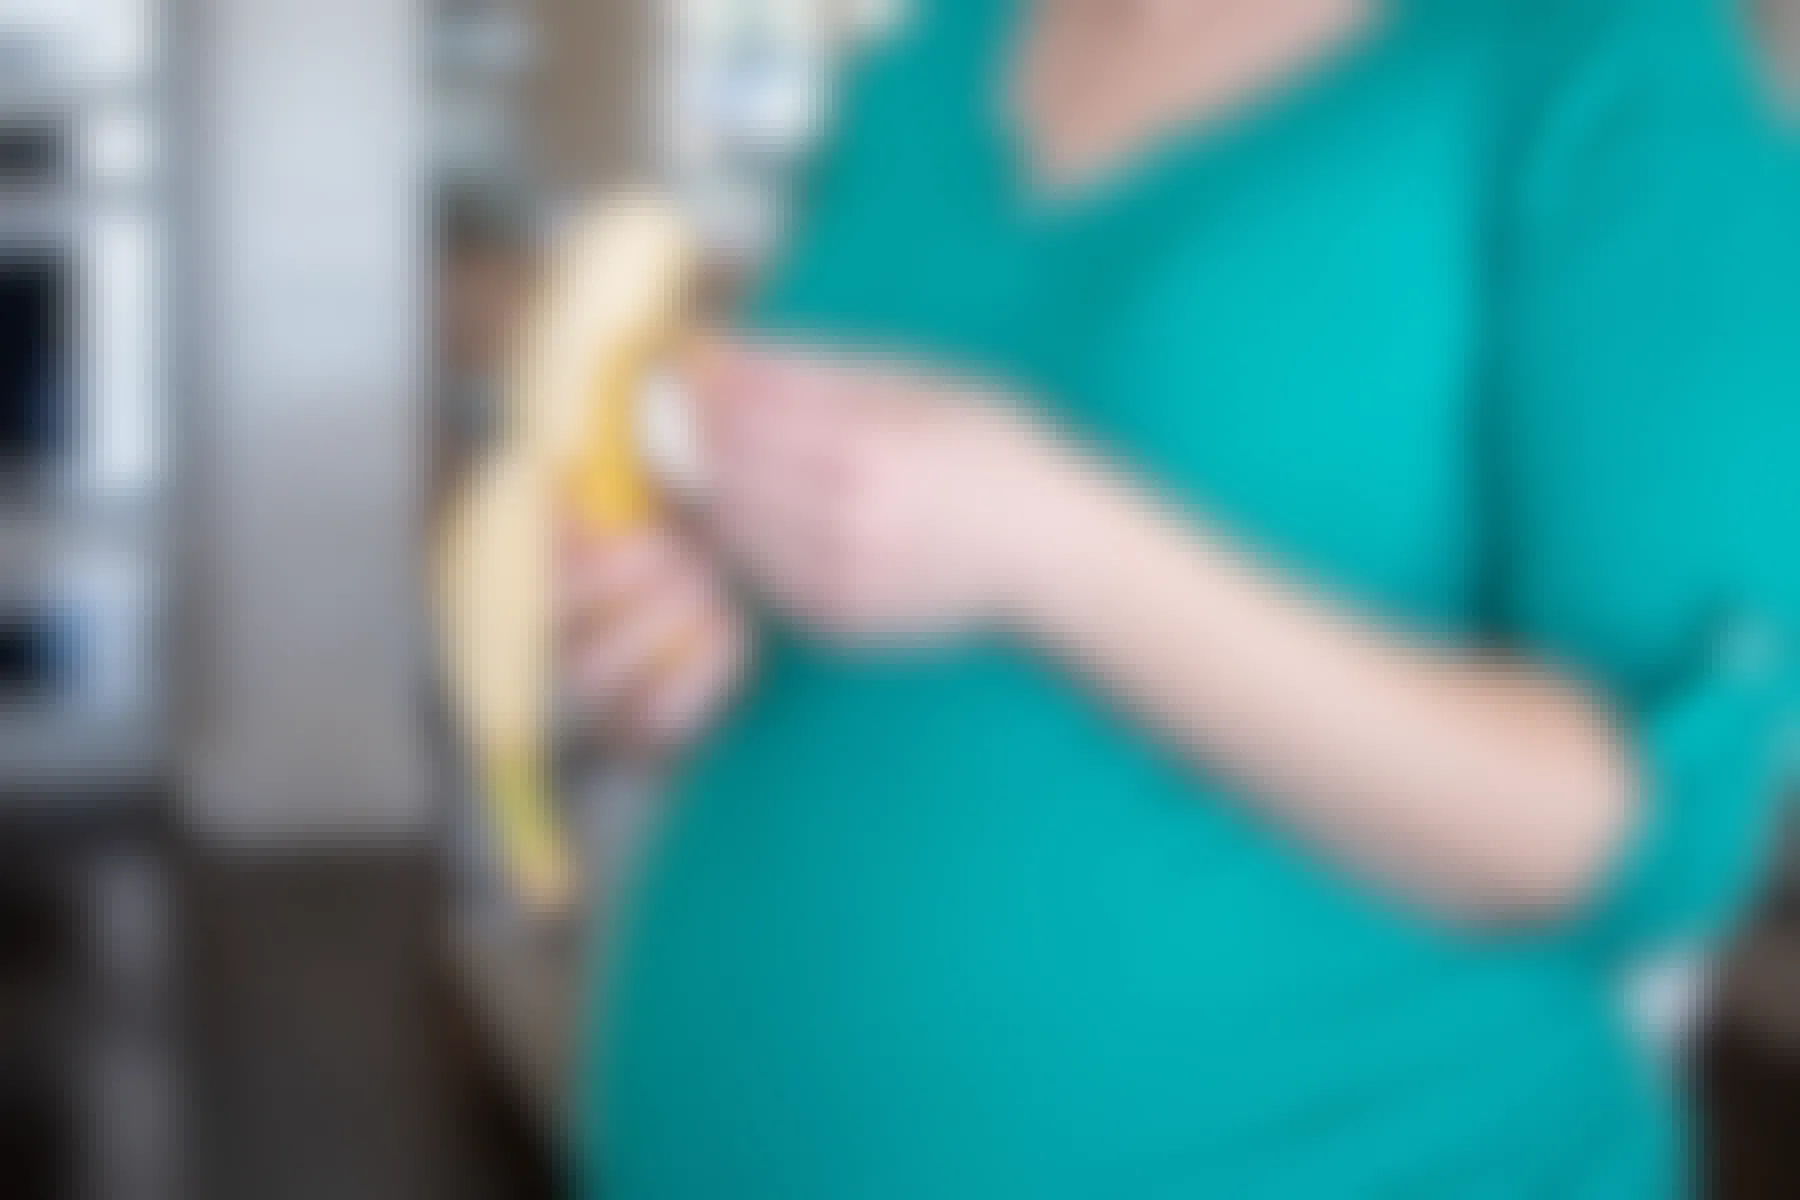 A pregnant woman peeling a banana.